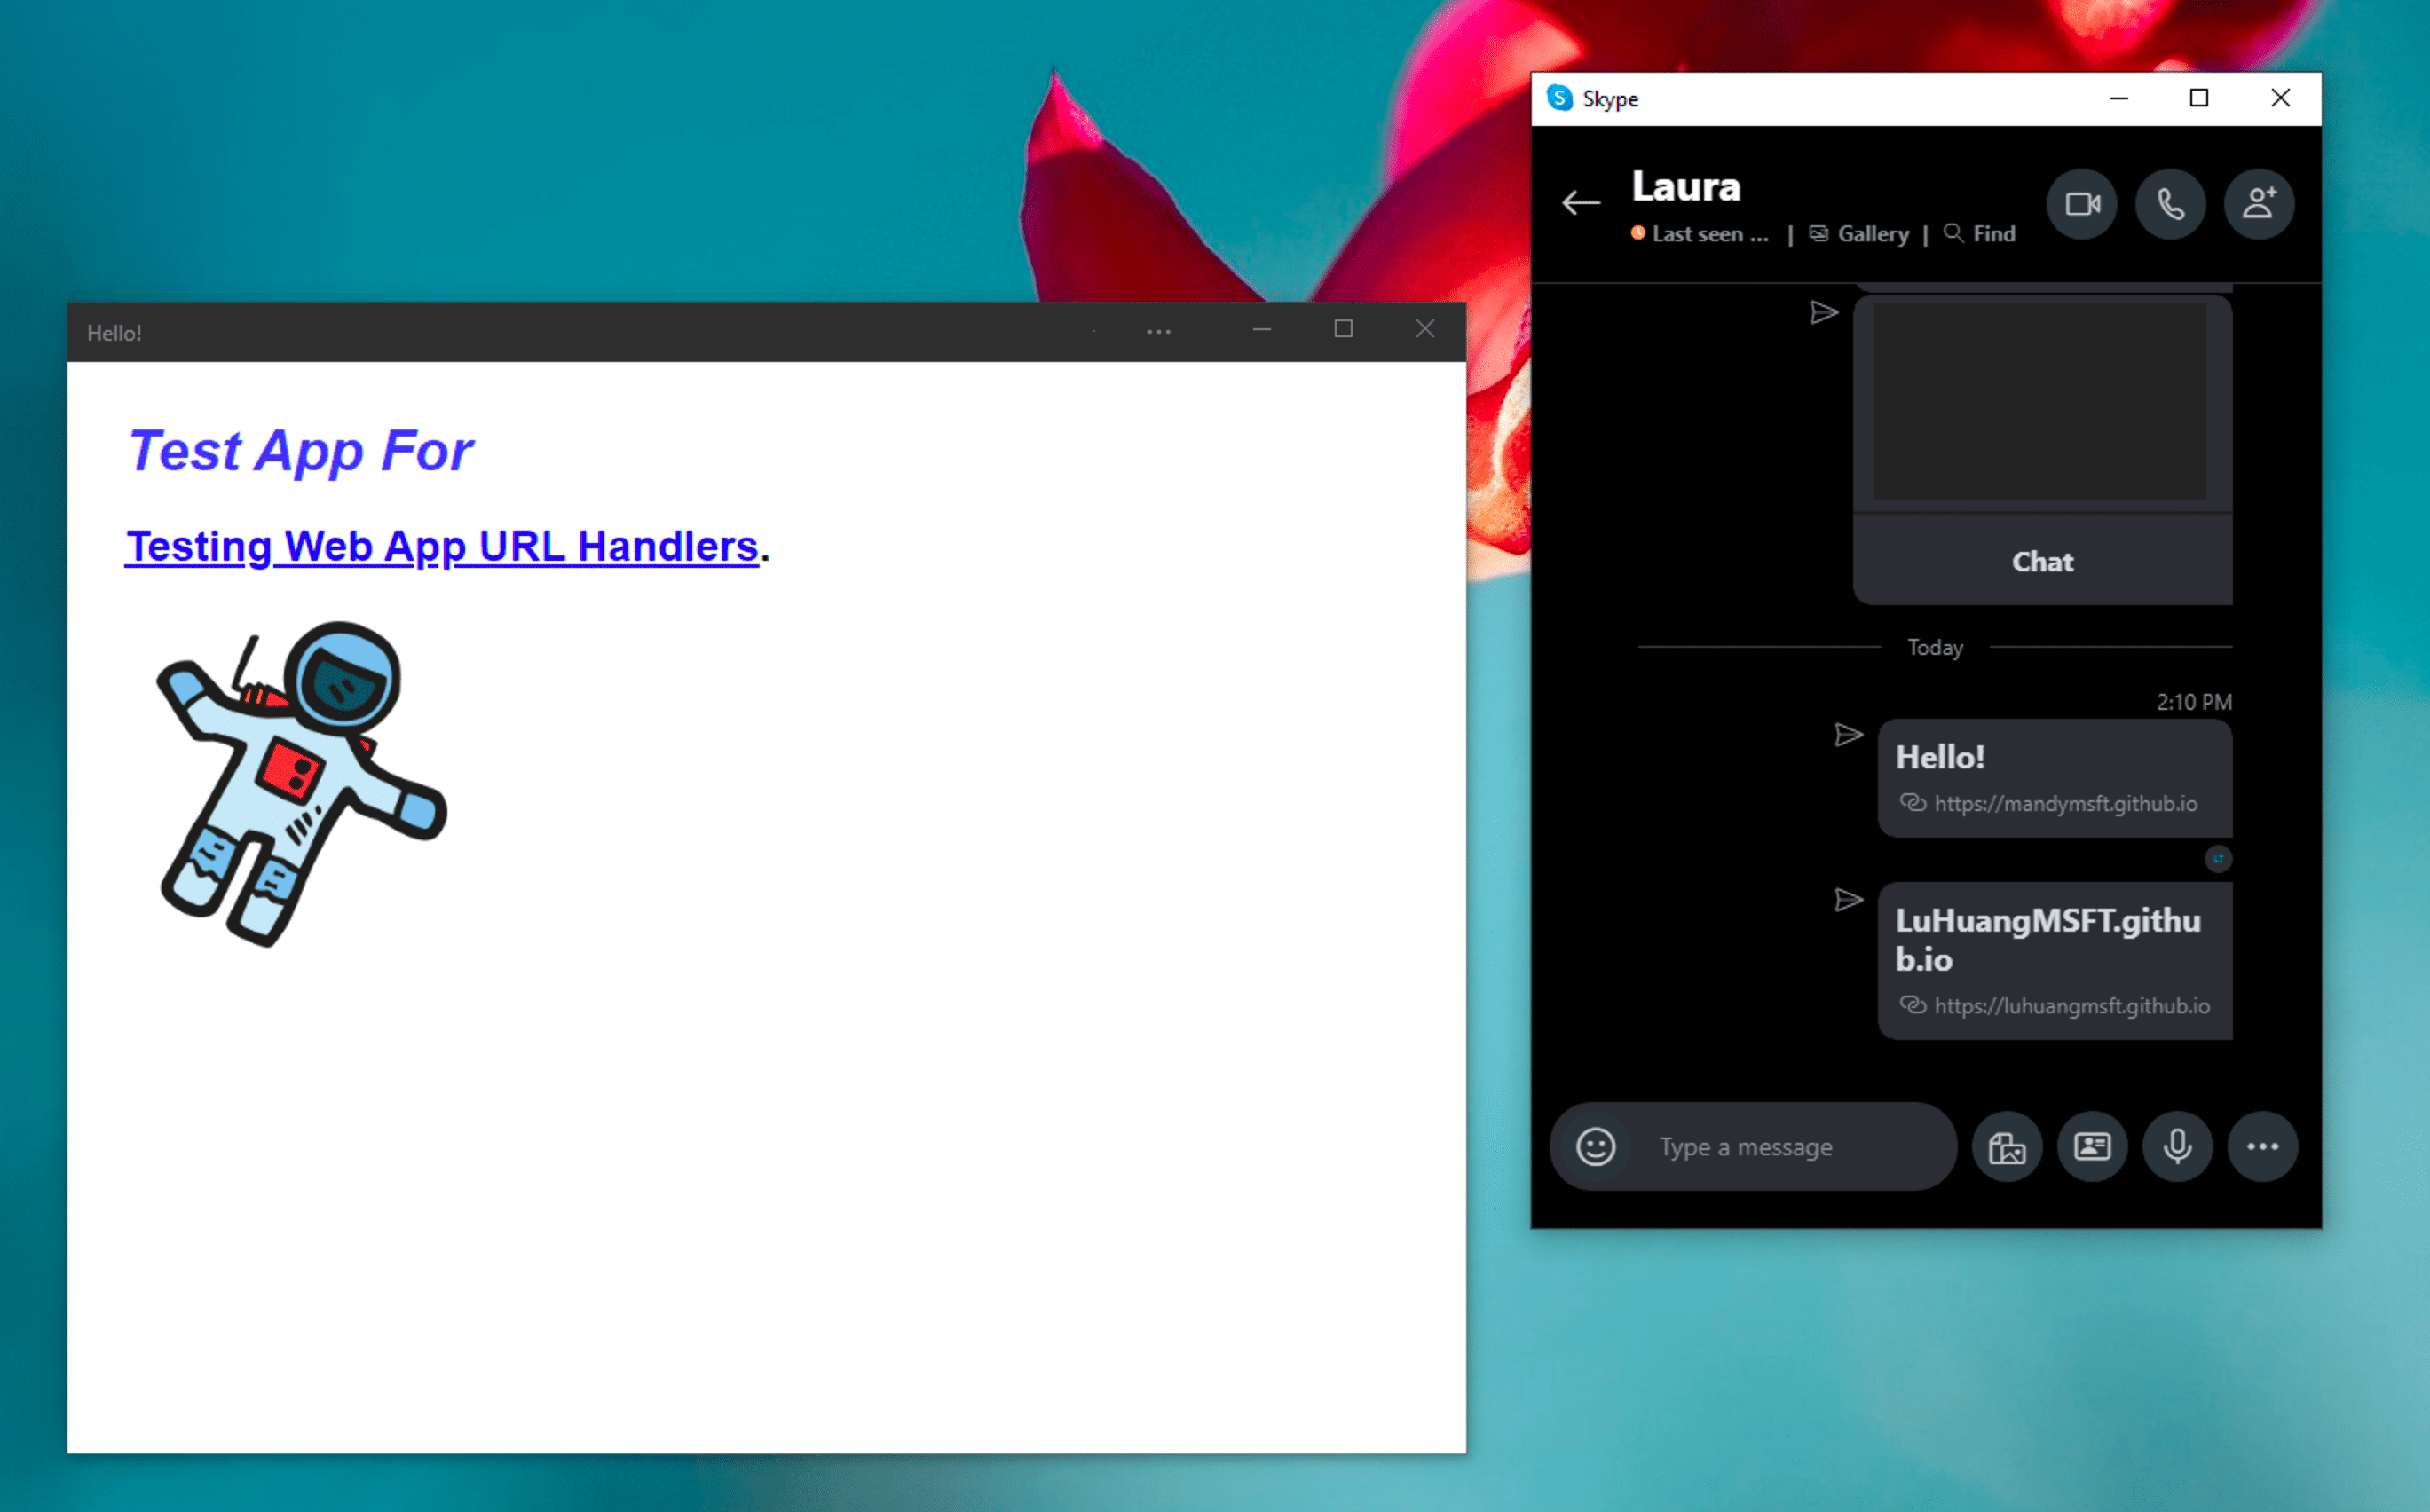 已安裝的試用版 PWA 旁邊有 Windows Skype 即時通訊應用程式，此應用程式會在按一下 Skype 即時通訊訊息中處理的連結後，以獨立模式開啟。